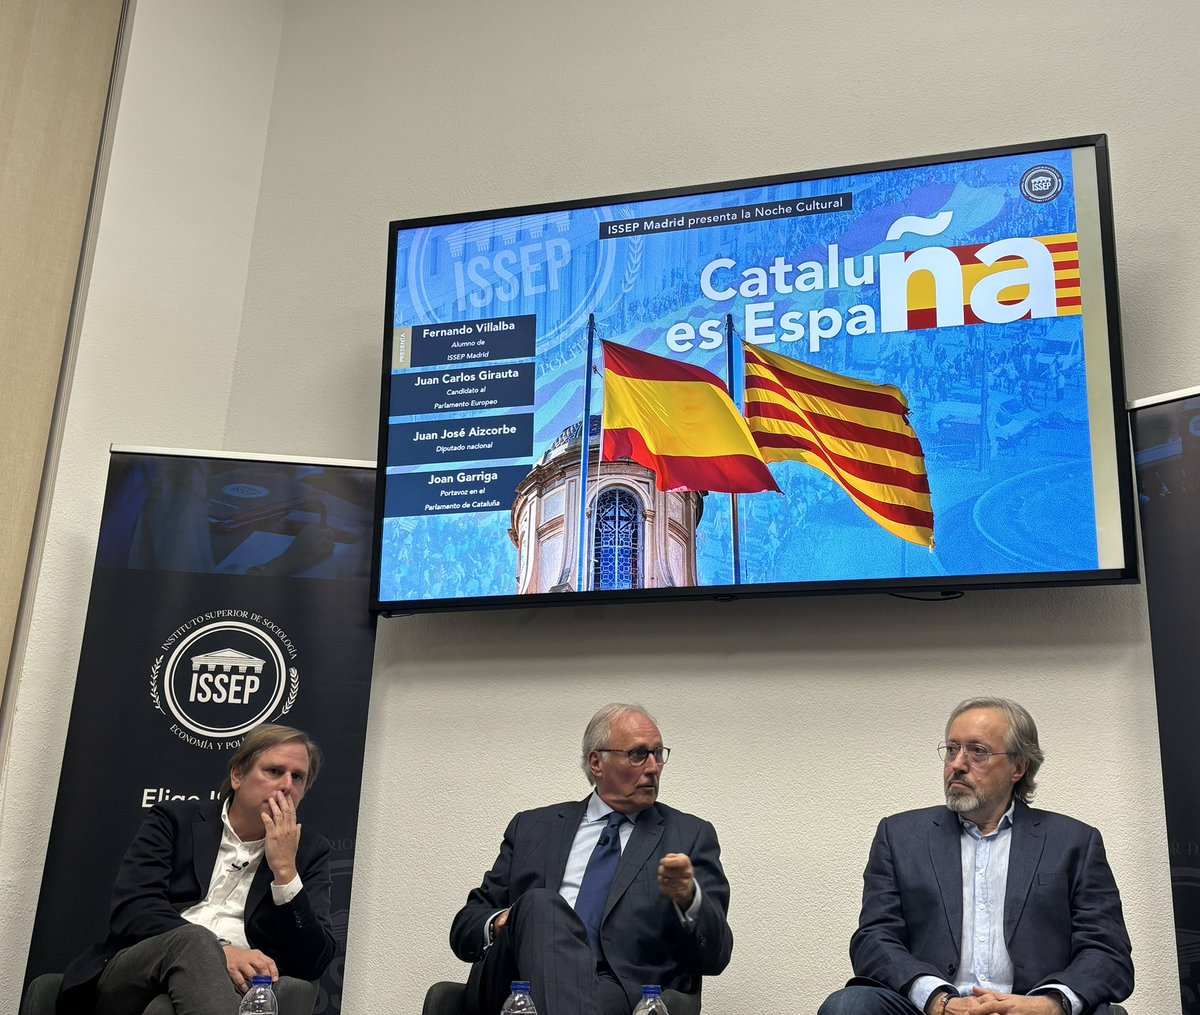 Cataluña es España. Excelente tertulia en @IssepMadrid sobre la importancia de la unidad de España y el peligro que suponen los separatismos. @JuanjoAizcorbe @JGarrigaDomenec y Juan Carlos Girauta, tres catalanes, valientes y españoles #SoloQuedaVox #Cataluña #España 🇪🇸